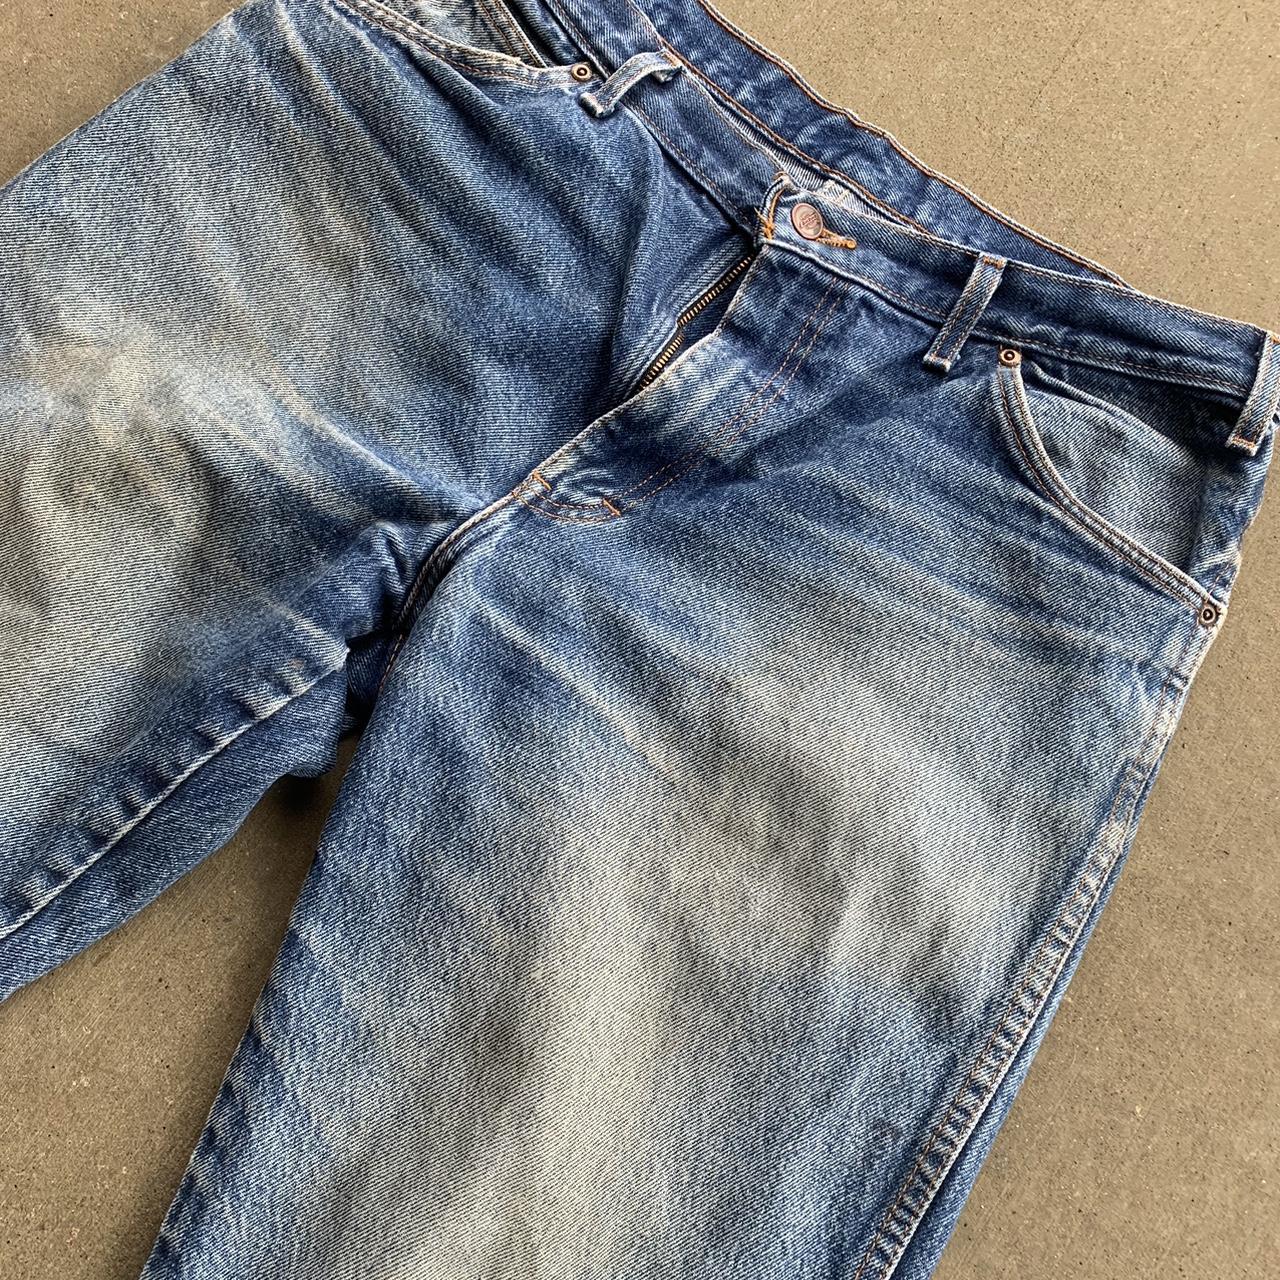 Vintage dickies jeans | 36x32 | faded blue Jean |... - Depop